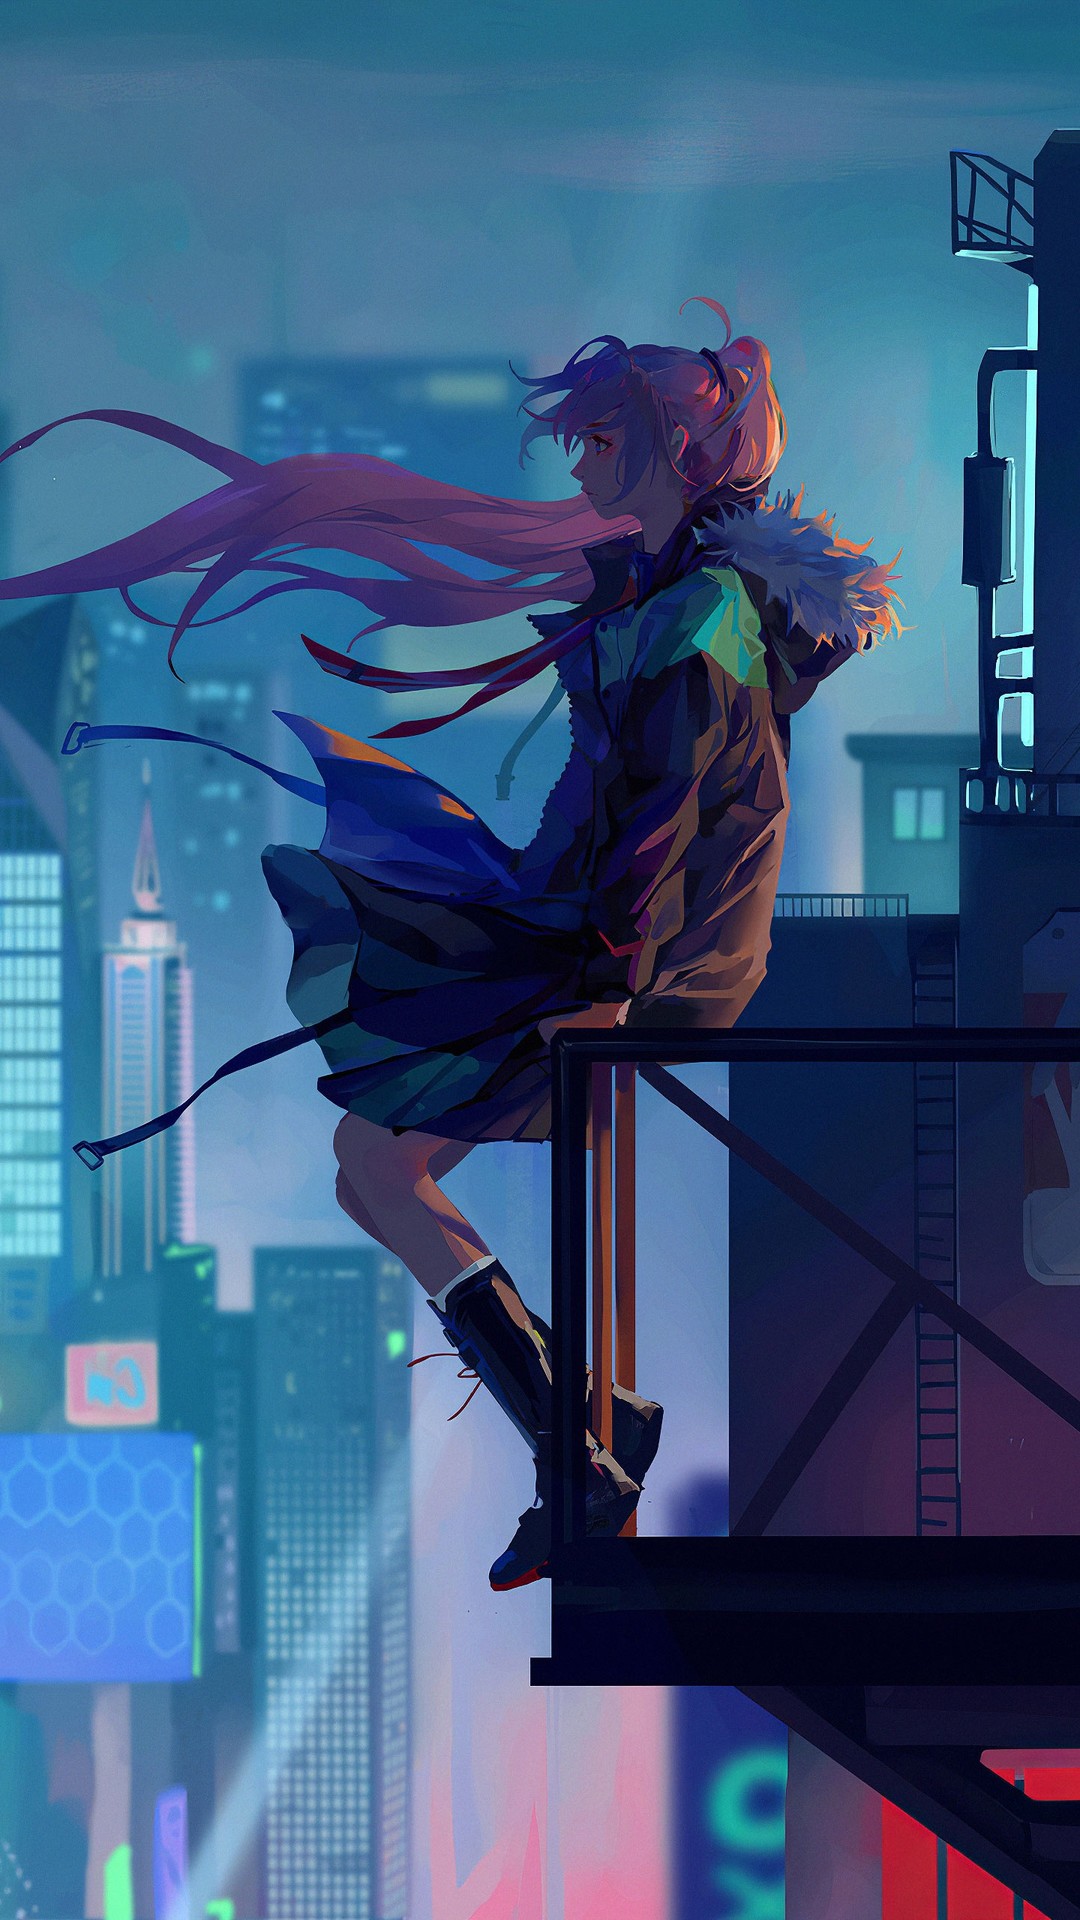 Artist, Hd, 4k, Artwork, Artstation Images, City, Anime - City Anime Girl Illust - HD Wallpaper 